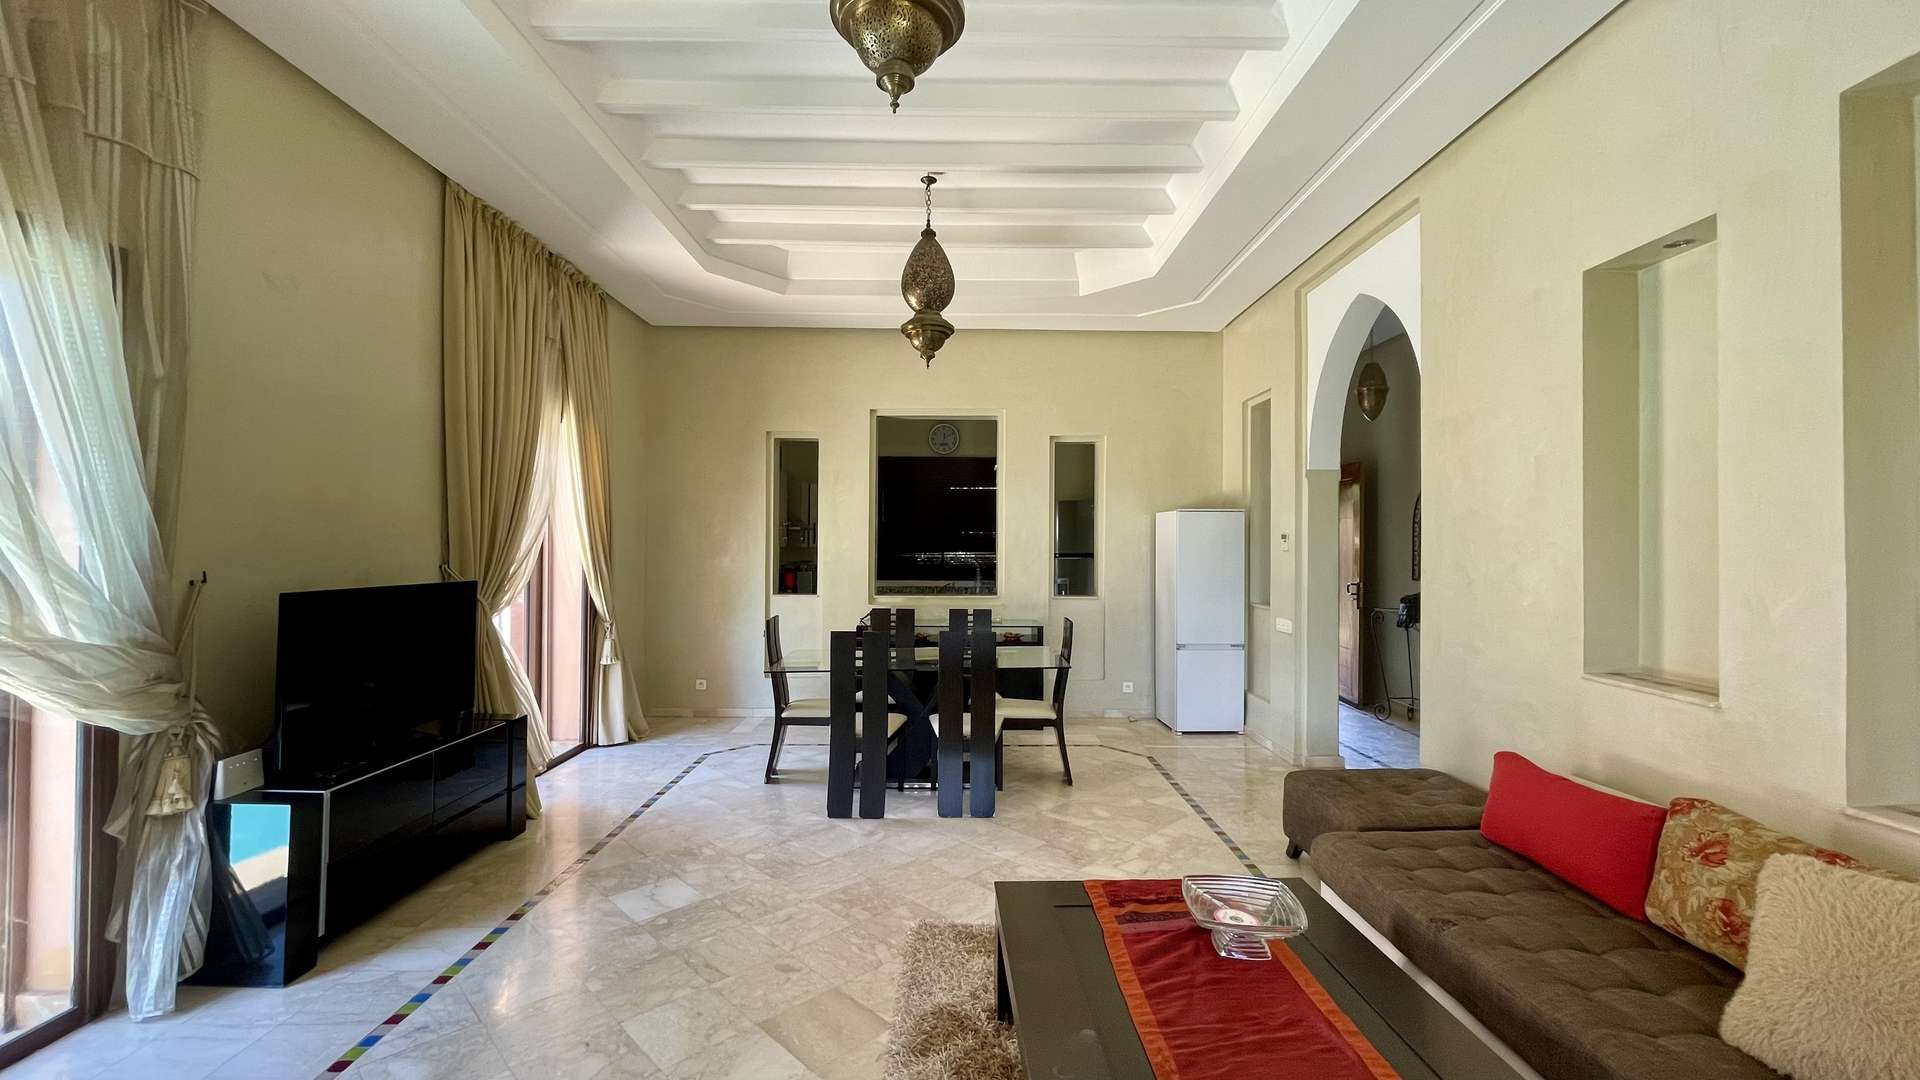 Location de vacances,Villa,Villa mitoyenne 3 chambres à coucher de plain-pieds sur la route de Fès à 20 min. du centre,Marrakech,Route de Fès